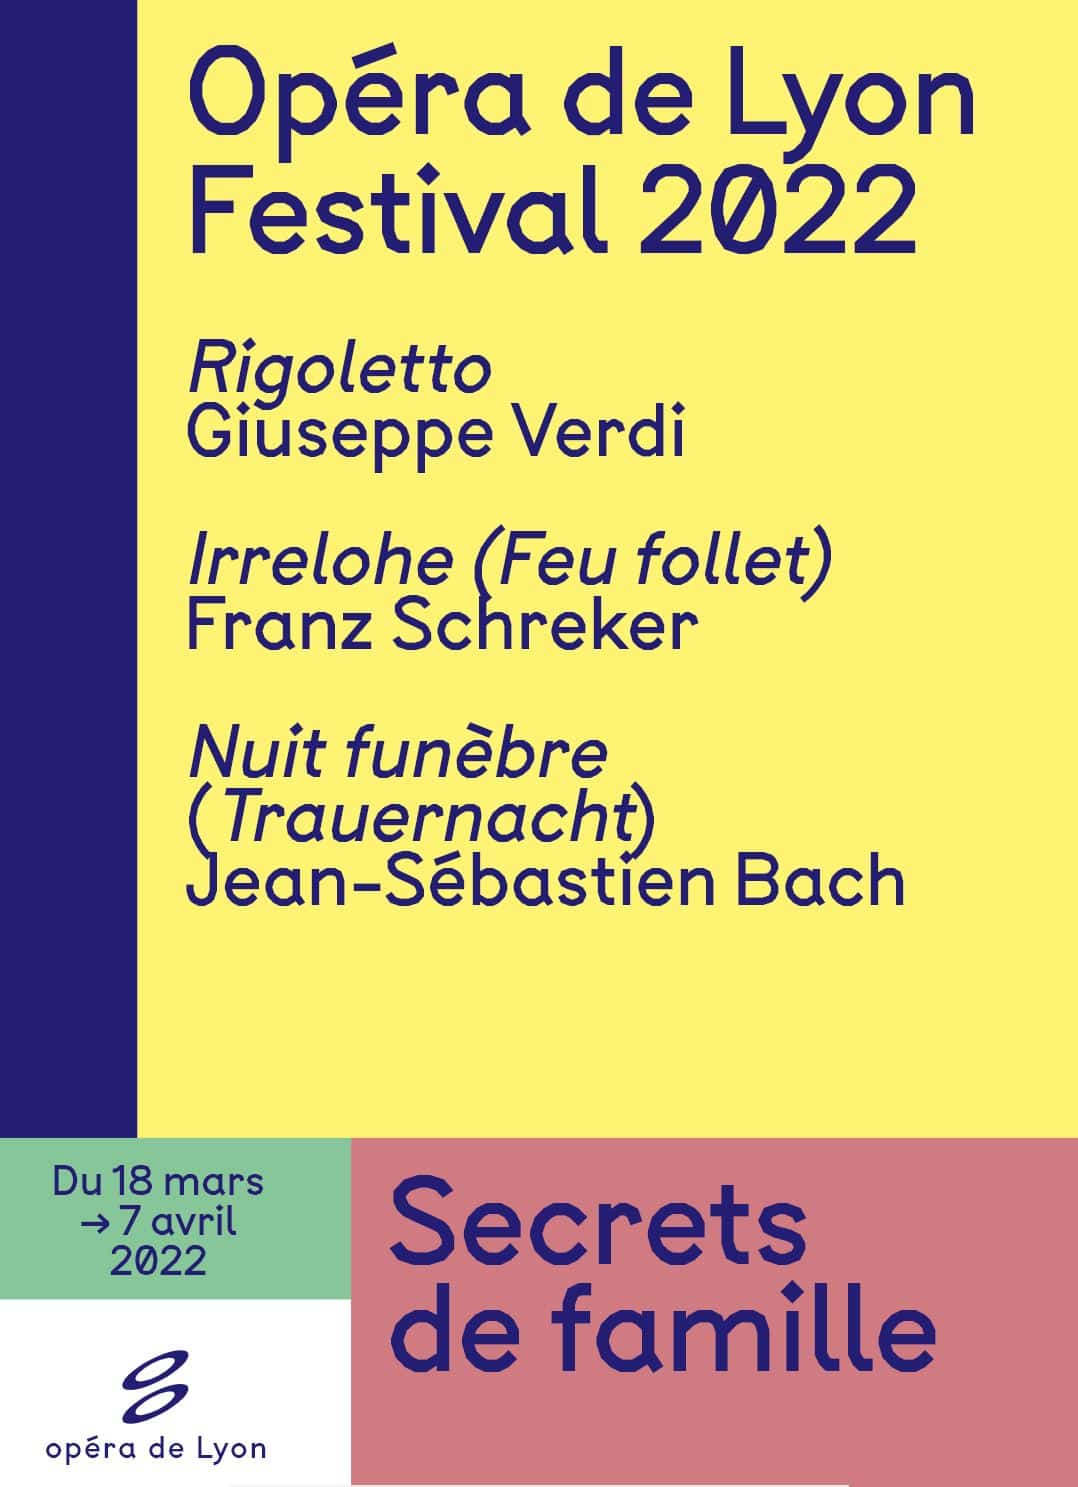 Le Secret : le festival 2022 de l'Opéra de Lyon